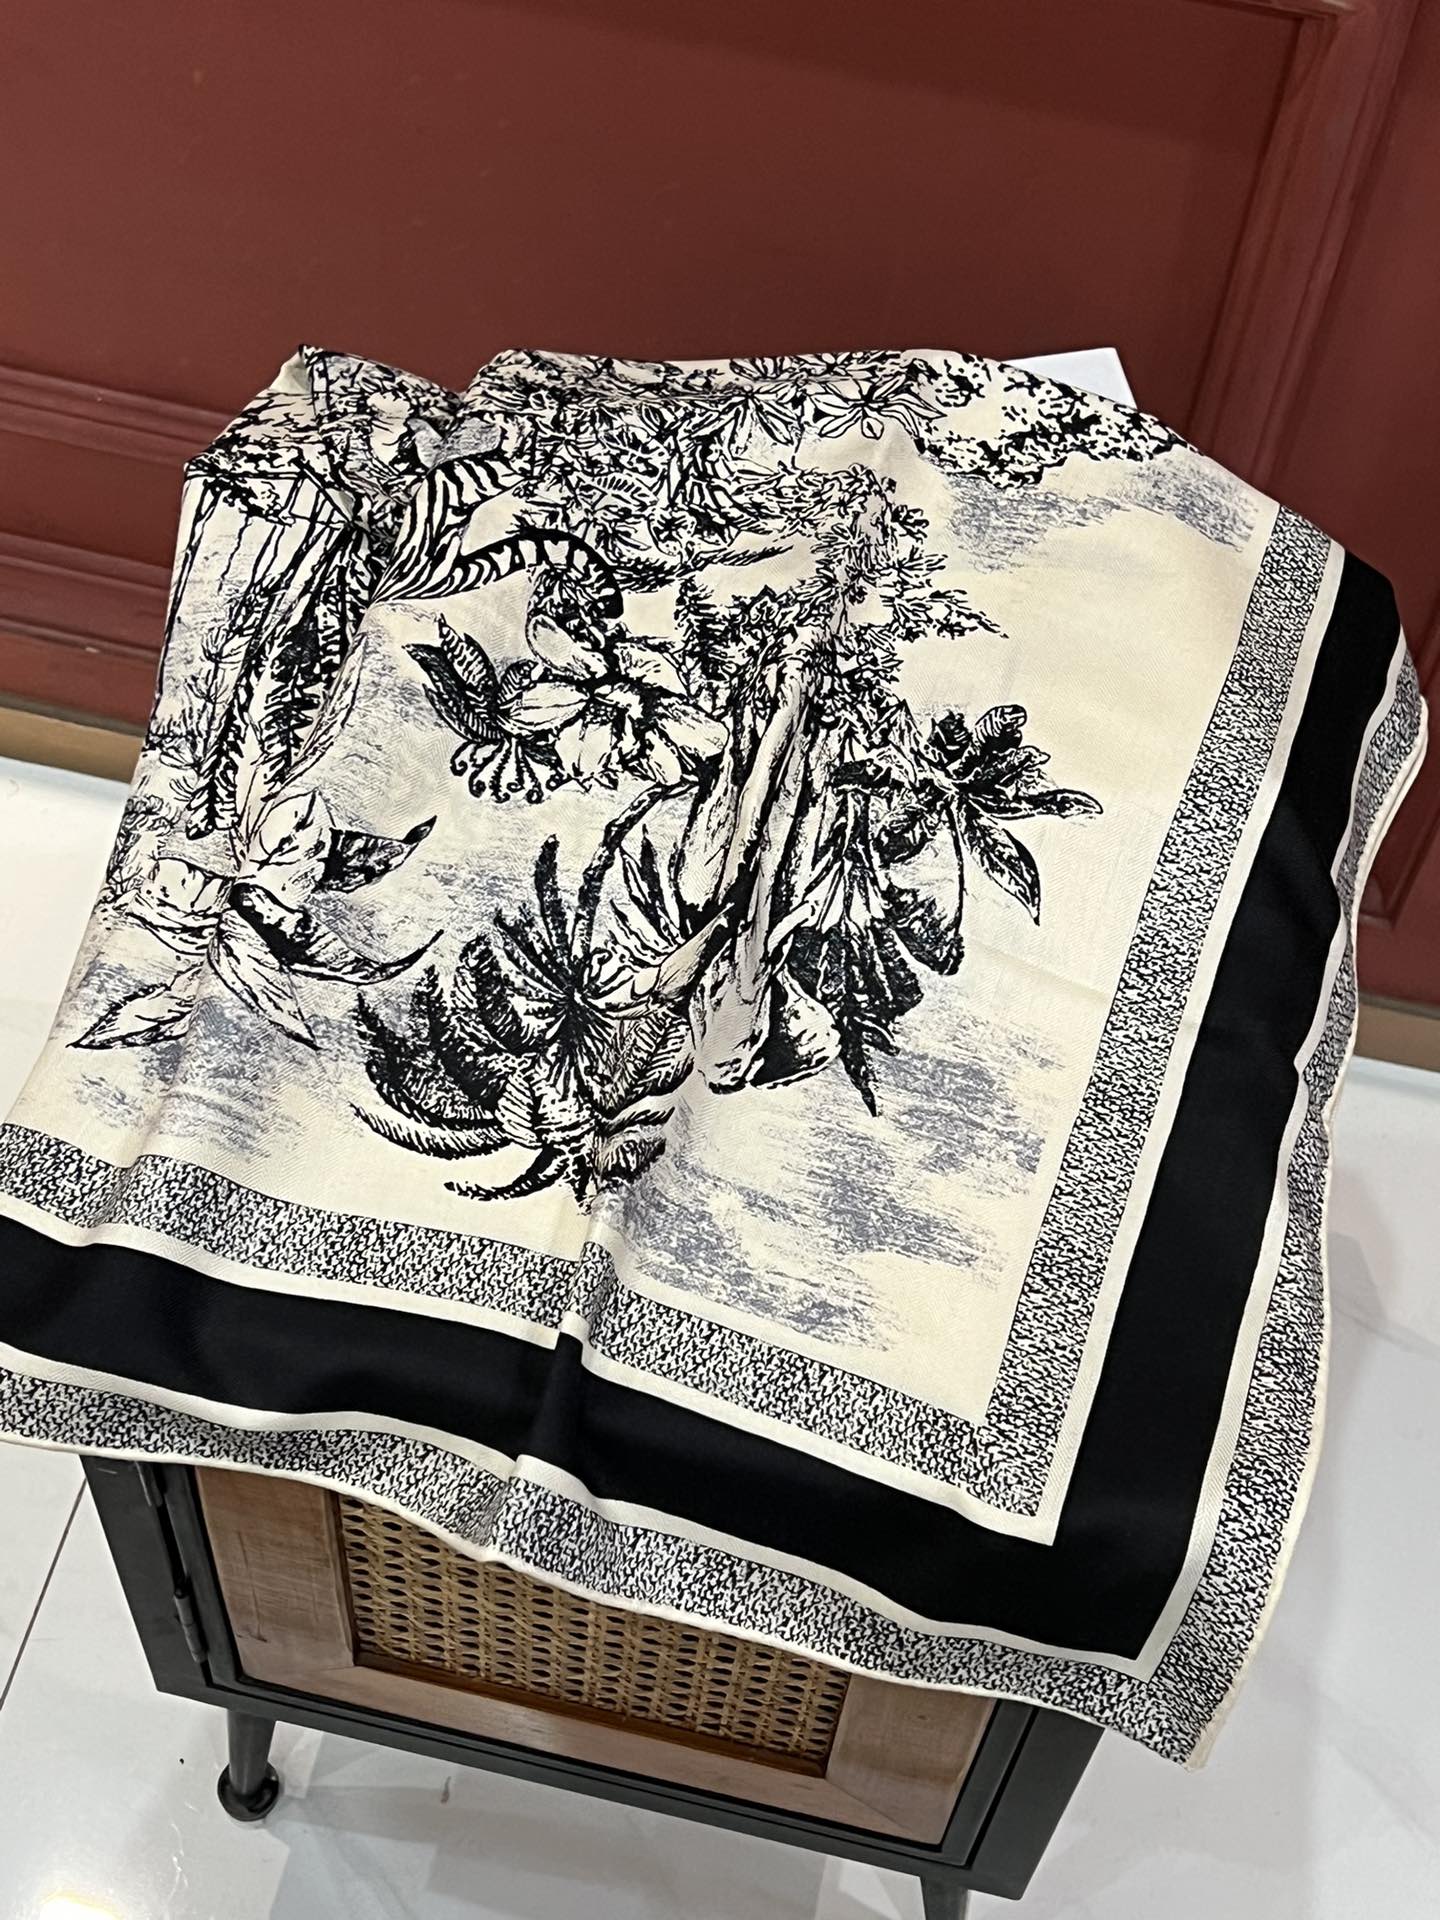 这款方巾饰以Voyage茹伊印花图案来自Dior与意大利艺术家彼得罗鲁福PietroRuffo携手打造的